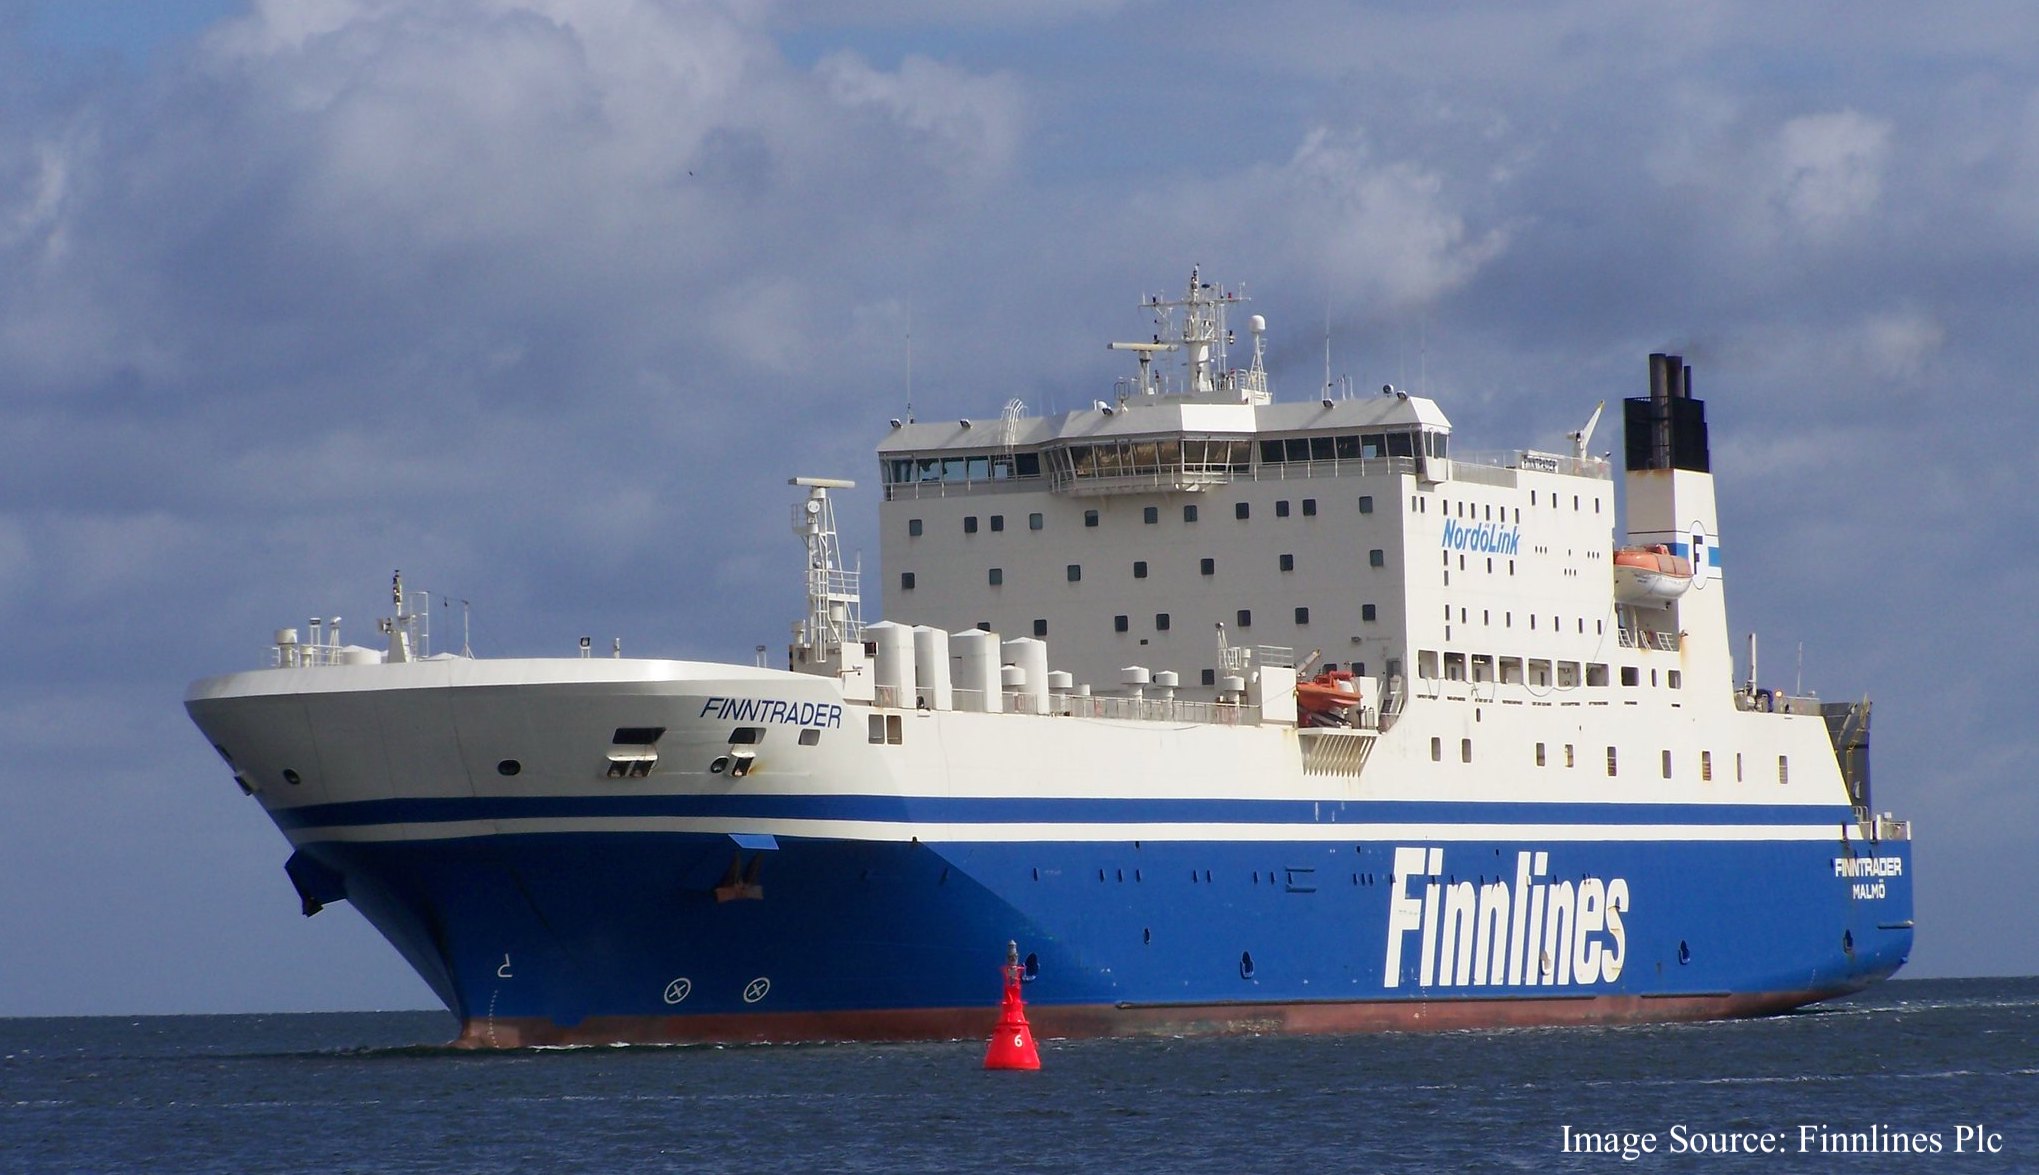 Fotografia lode Finnlines - Finntrader